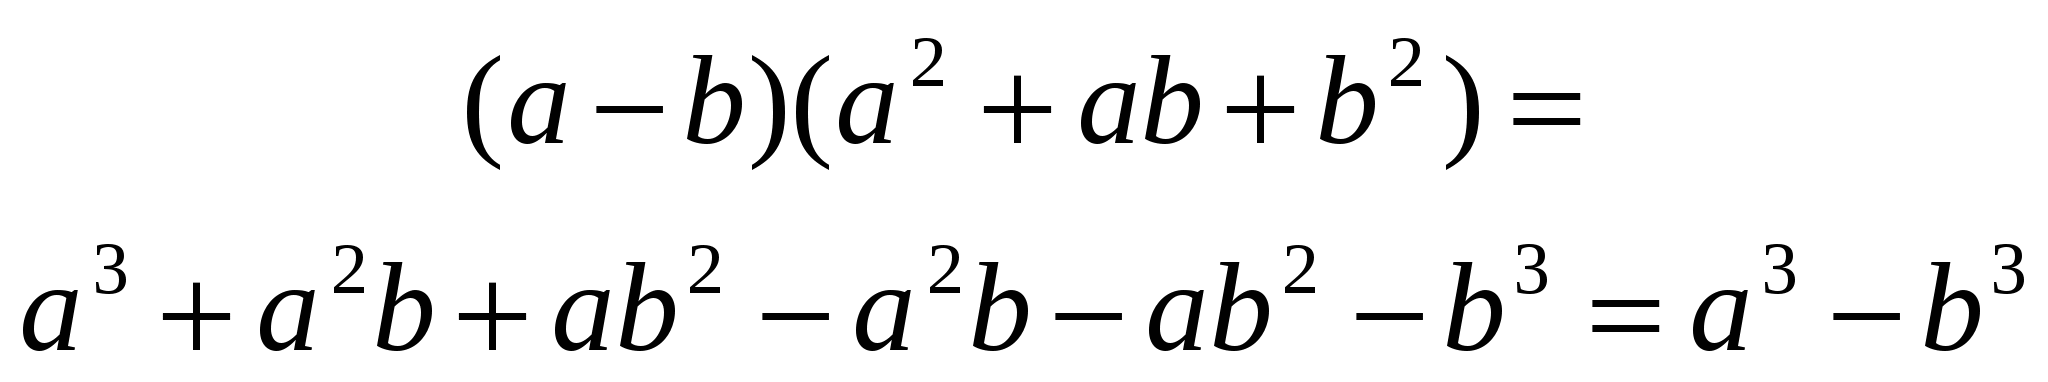 Разложение на множители суммы и разности кубов